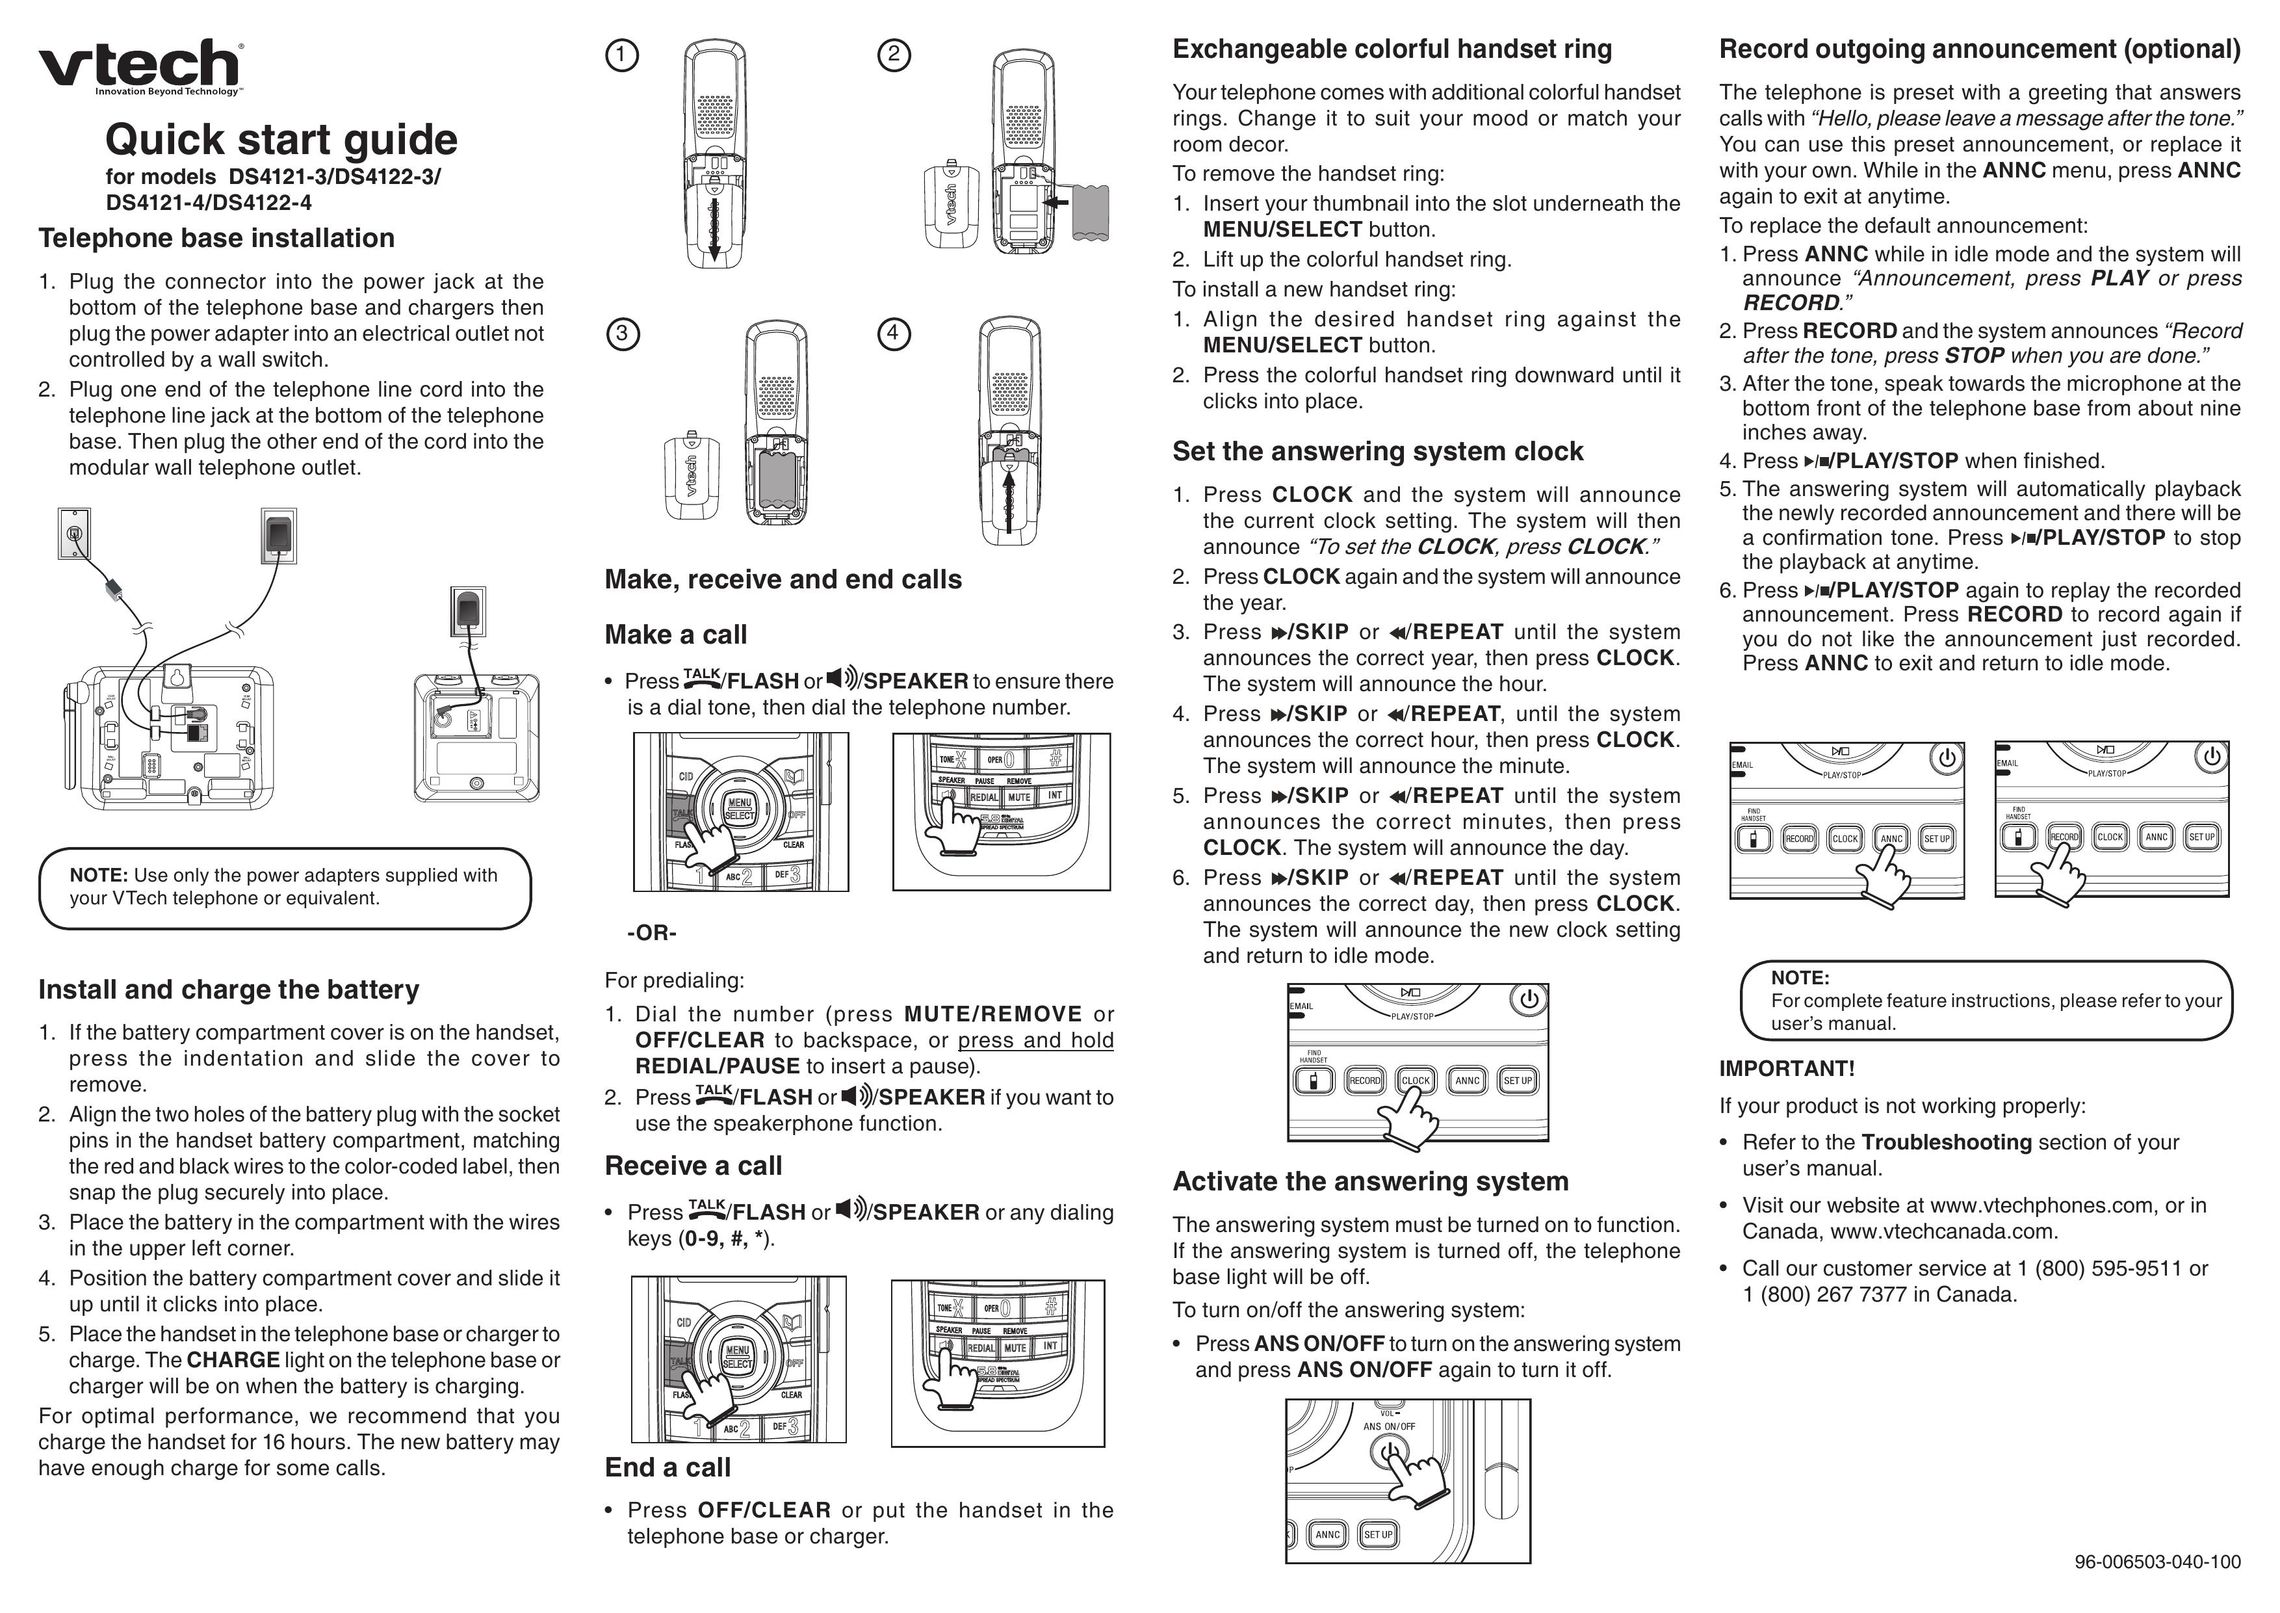 VTech DS4121-4 Telephone User Manual